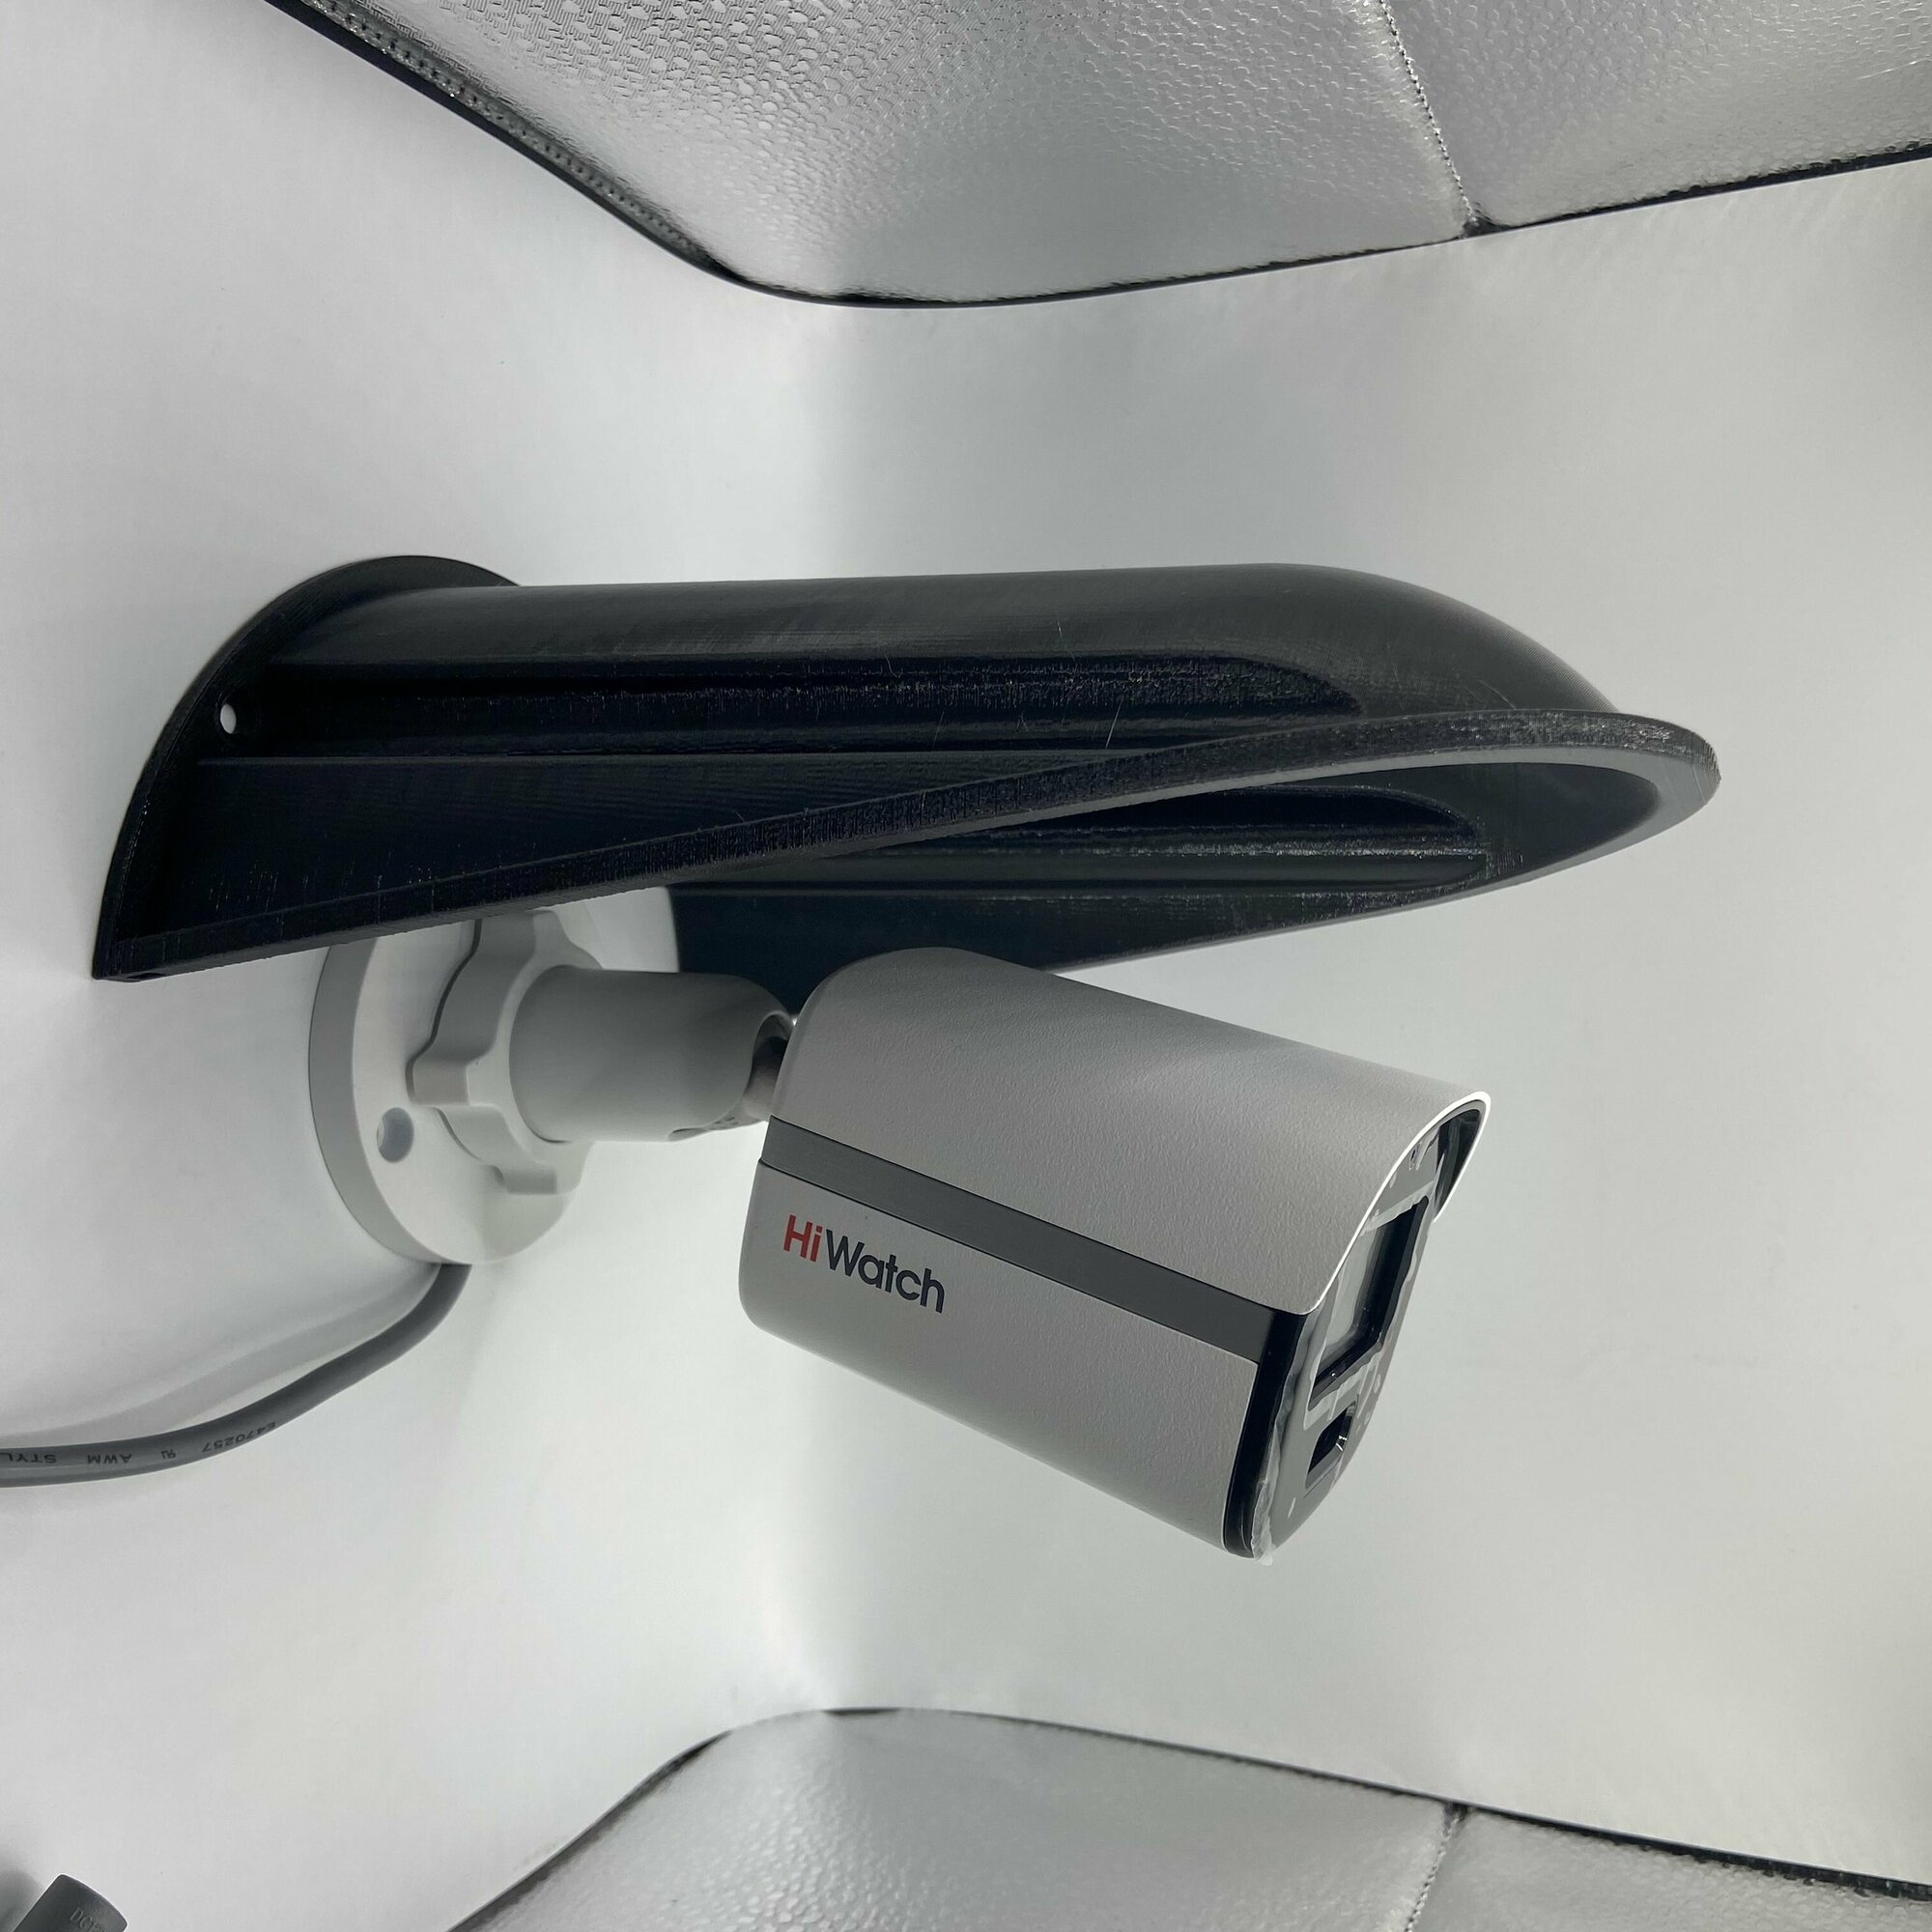 Защитный козырек для камеры видеонаблюдения Ракушка-XL 3D-печать HIKVISION HIWATCH DAHUA (черный) защита камеры от дождя, льда, снега